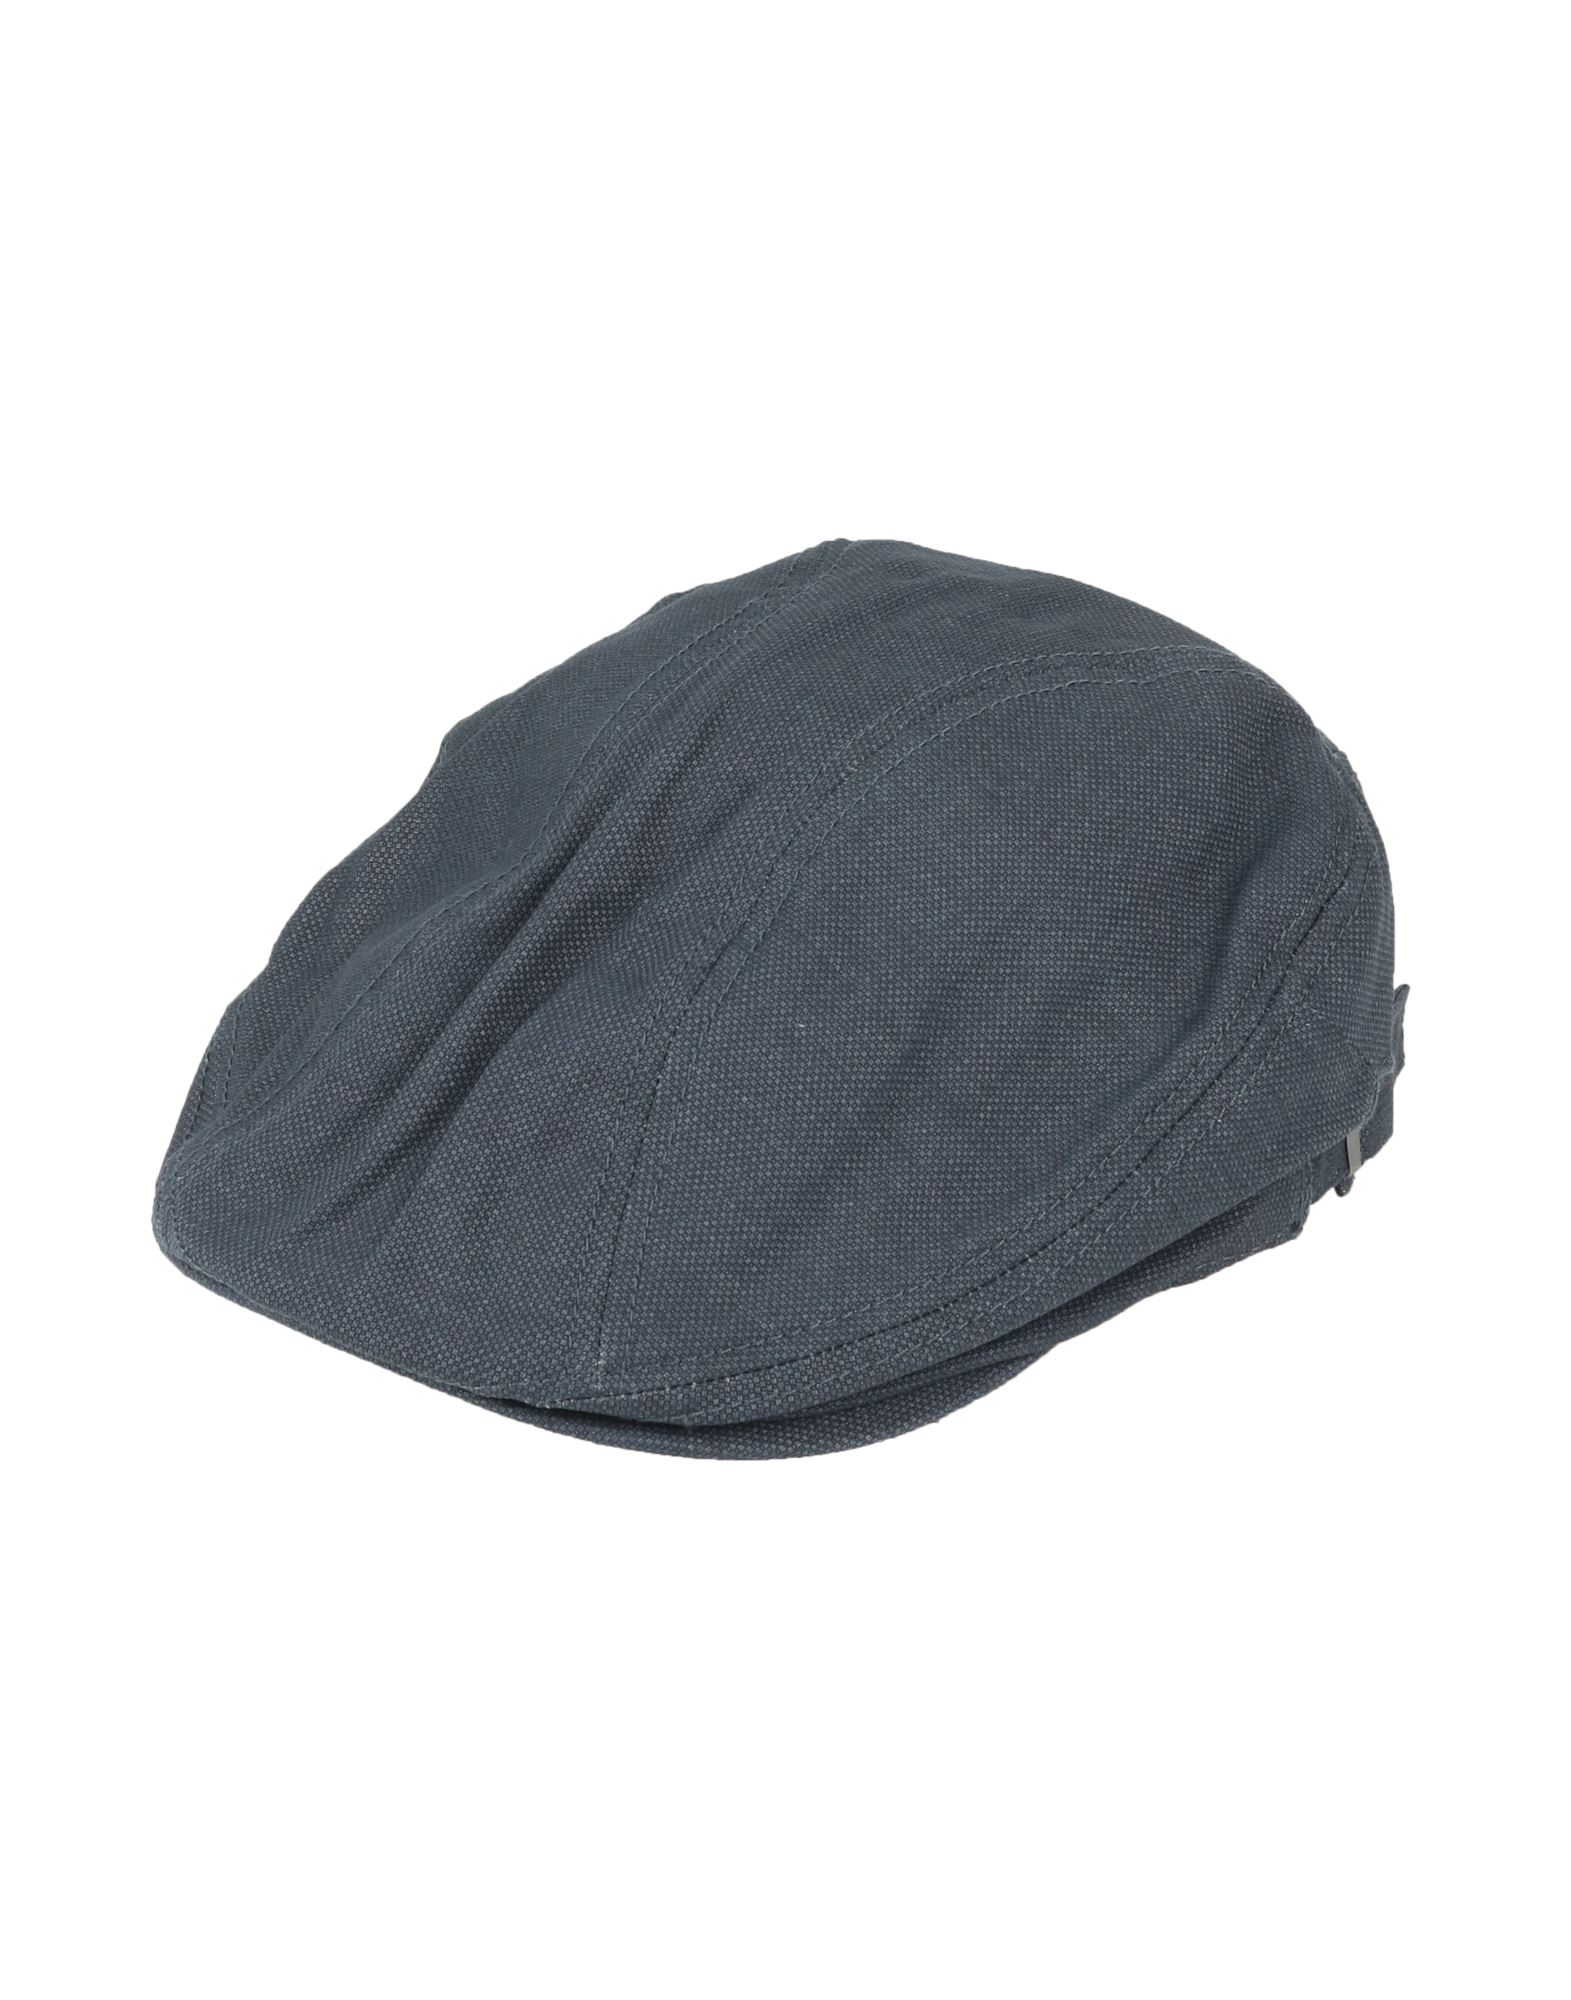 ボルサリーノ(Borsalino) ハンチング メンズ帽子・キャップ | 通販 